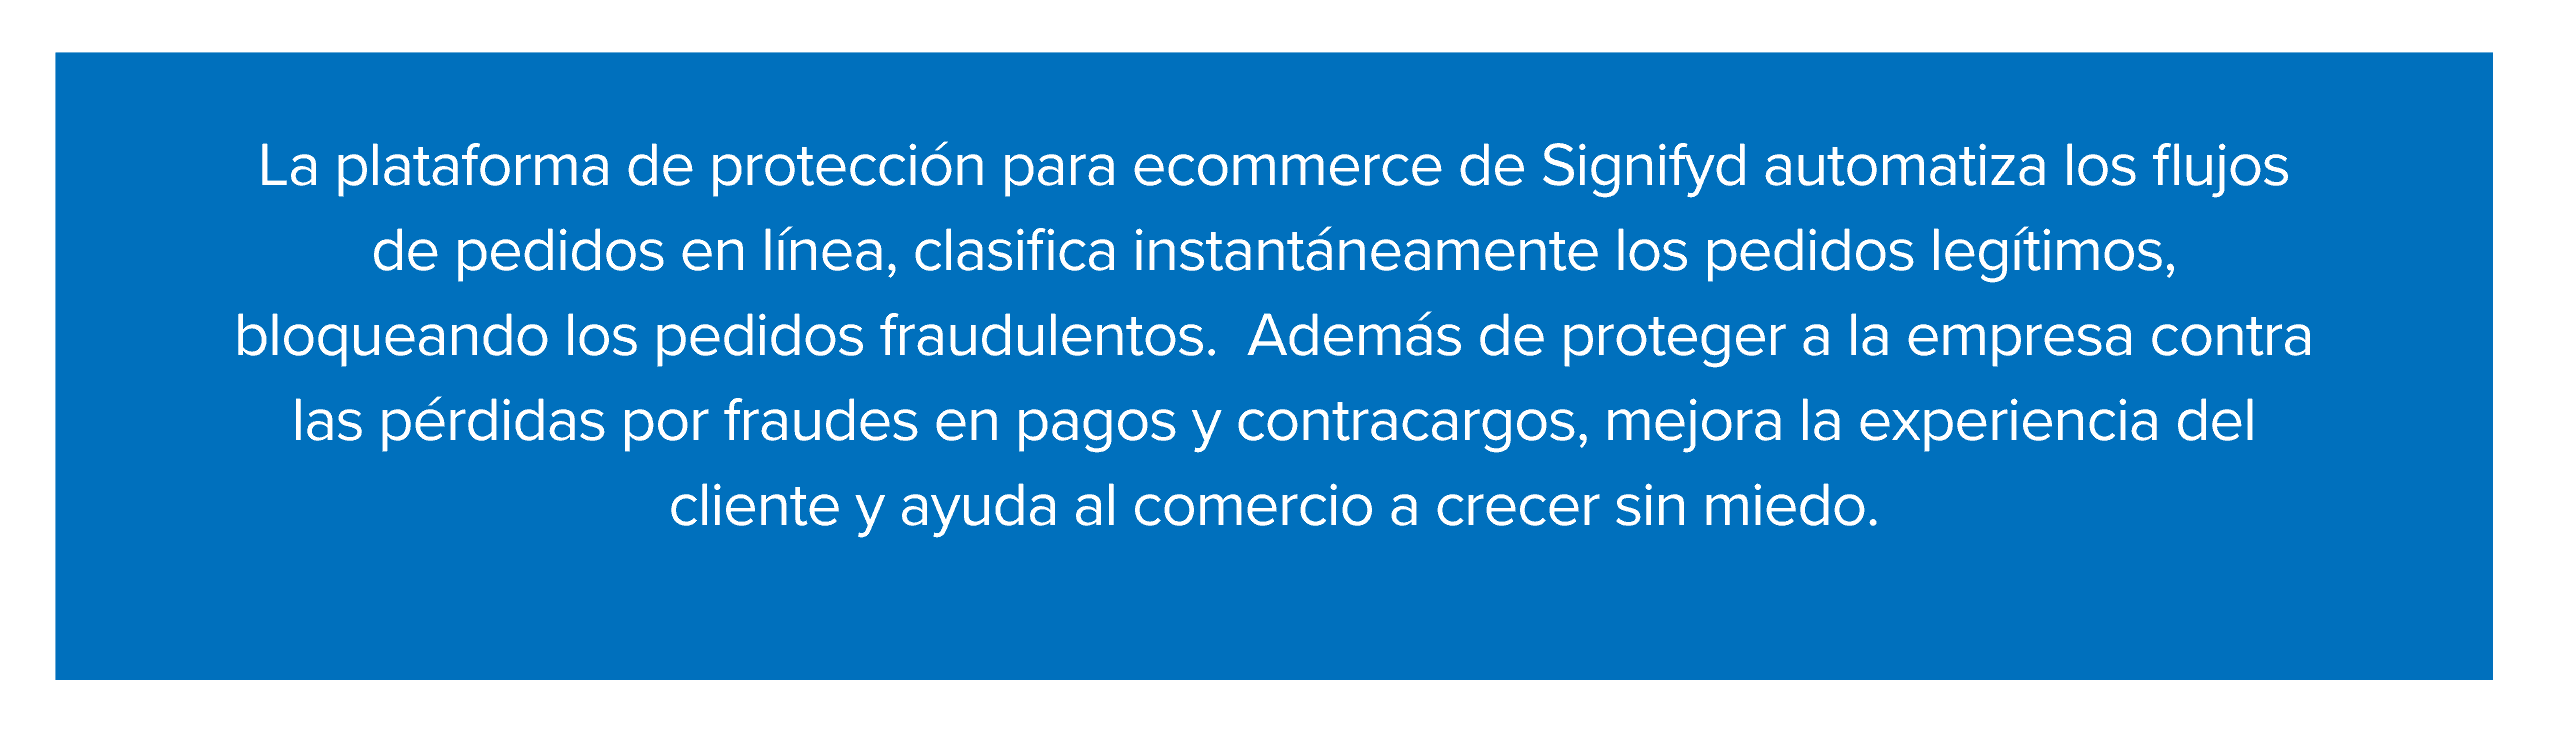 La plataforma de protección de comercio electrónico de Signifyd tiene varias funcionalidades como la automatización de los flujos de pedidos online